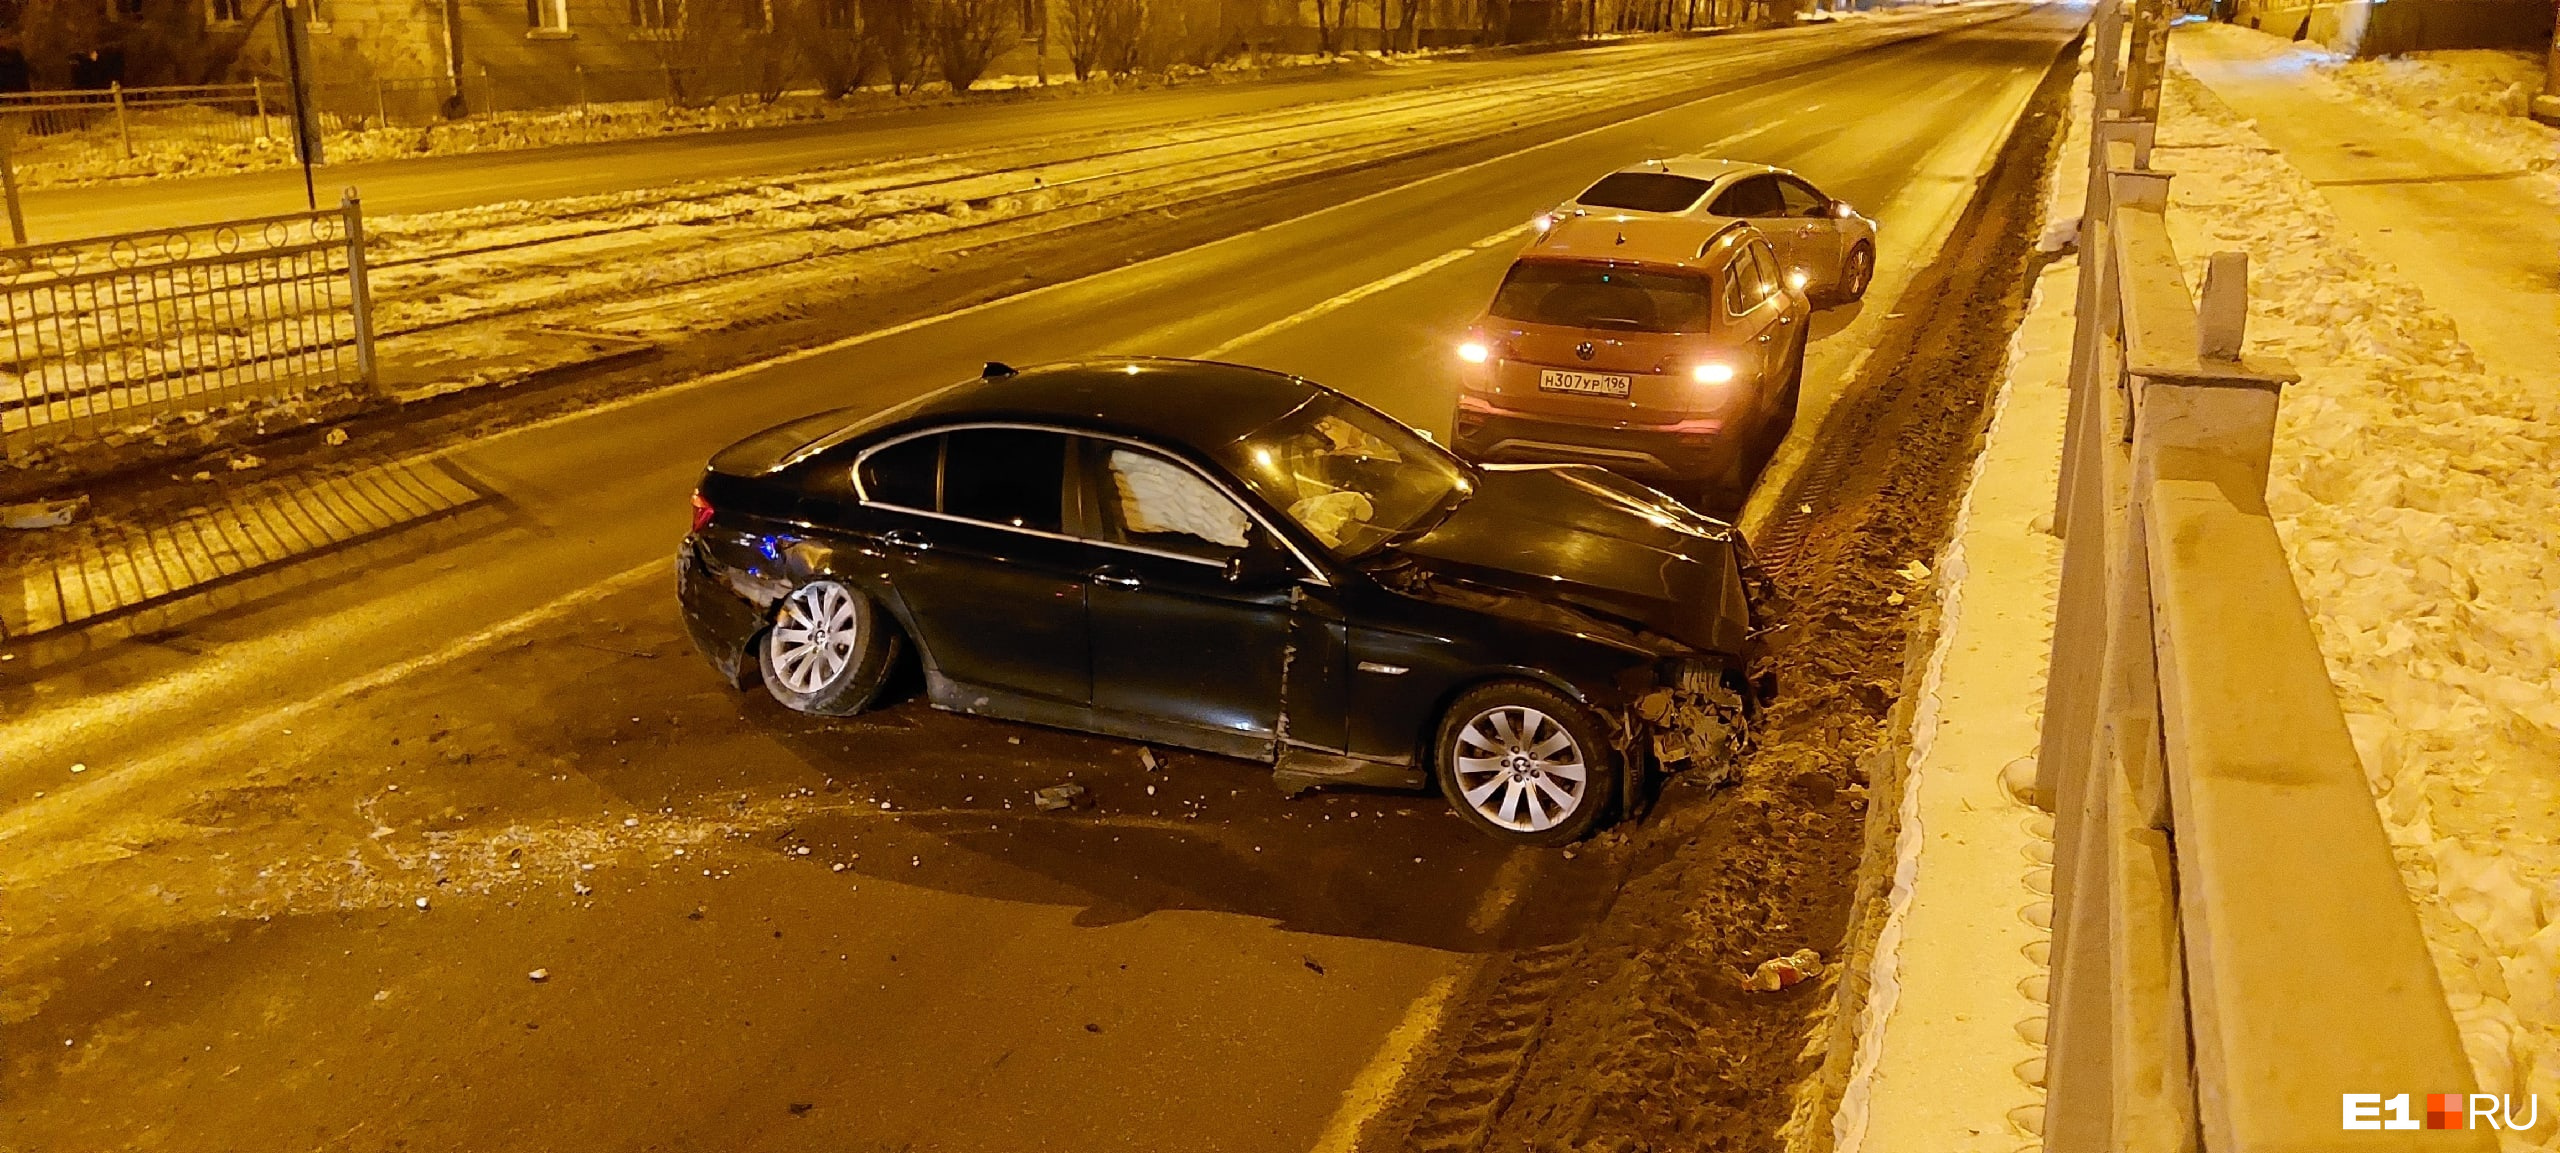 Стали известны подробности аварии, где екатеринбуржец на BMW разнес остановку и бросил свою машину